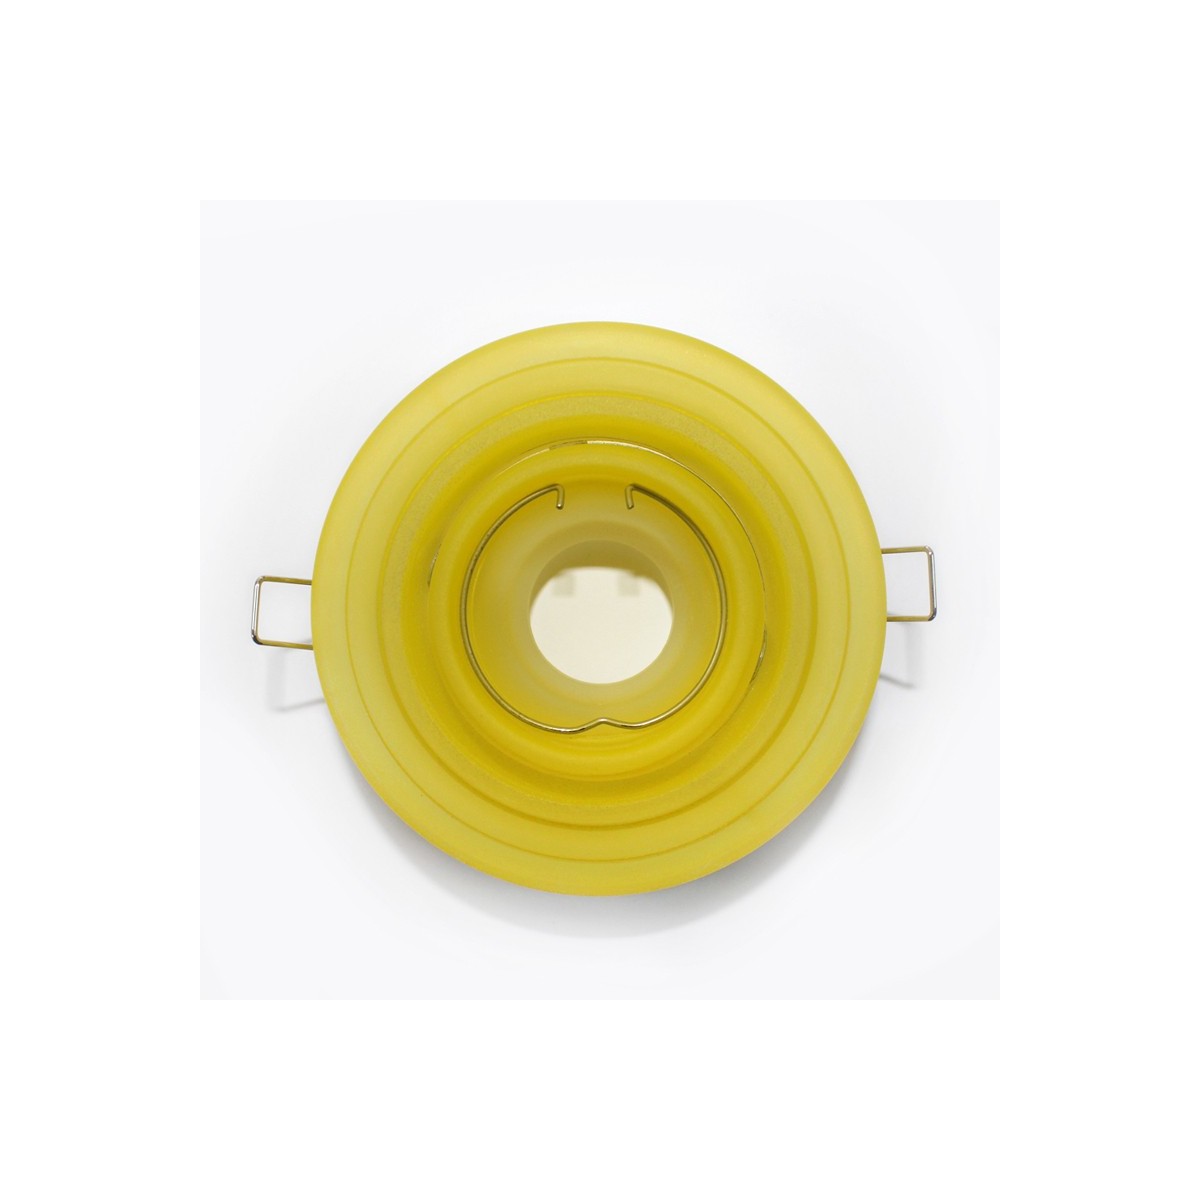 Empotrable basculante redondo escalonado cristal amarillo